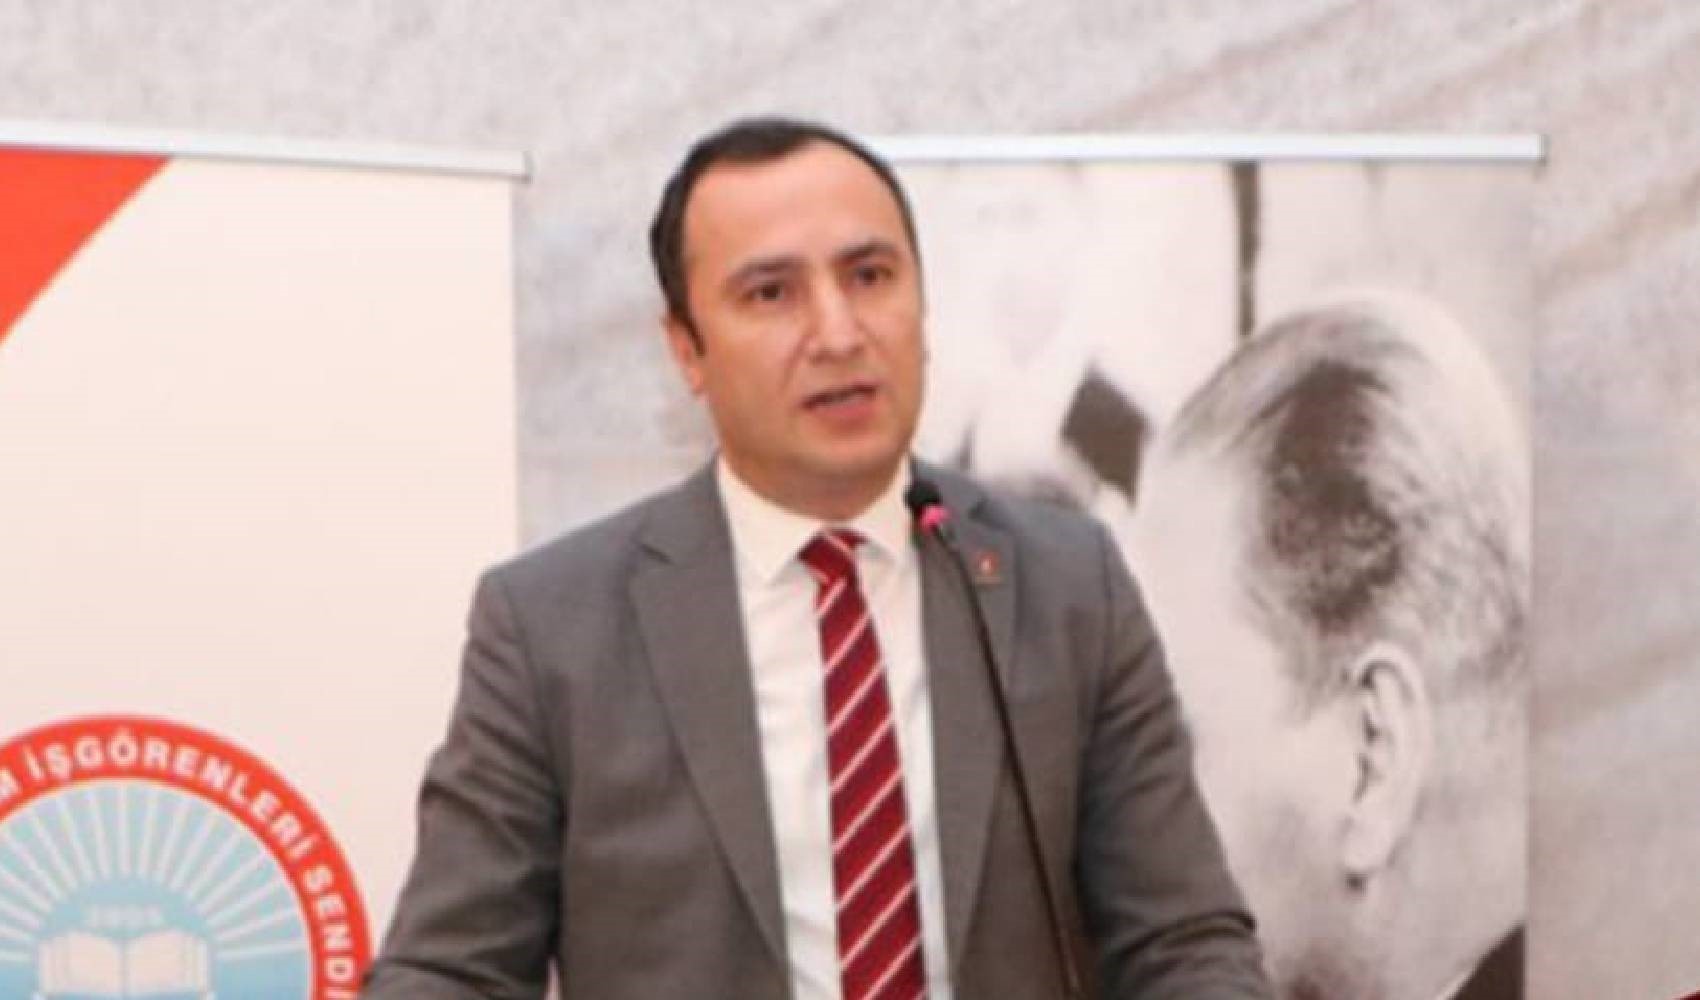 Milli Eğitim Bakanı Yusuf Tekin'in Özallı, Erbakanlı 'müfredat' savunmasına Eğitim-İş Genel Başkanı Kadem Özbay tepki gösterdi: 'Referans noktalarını biraz eksik anlatmış...'